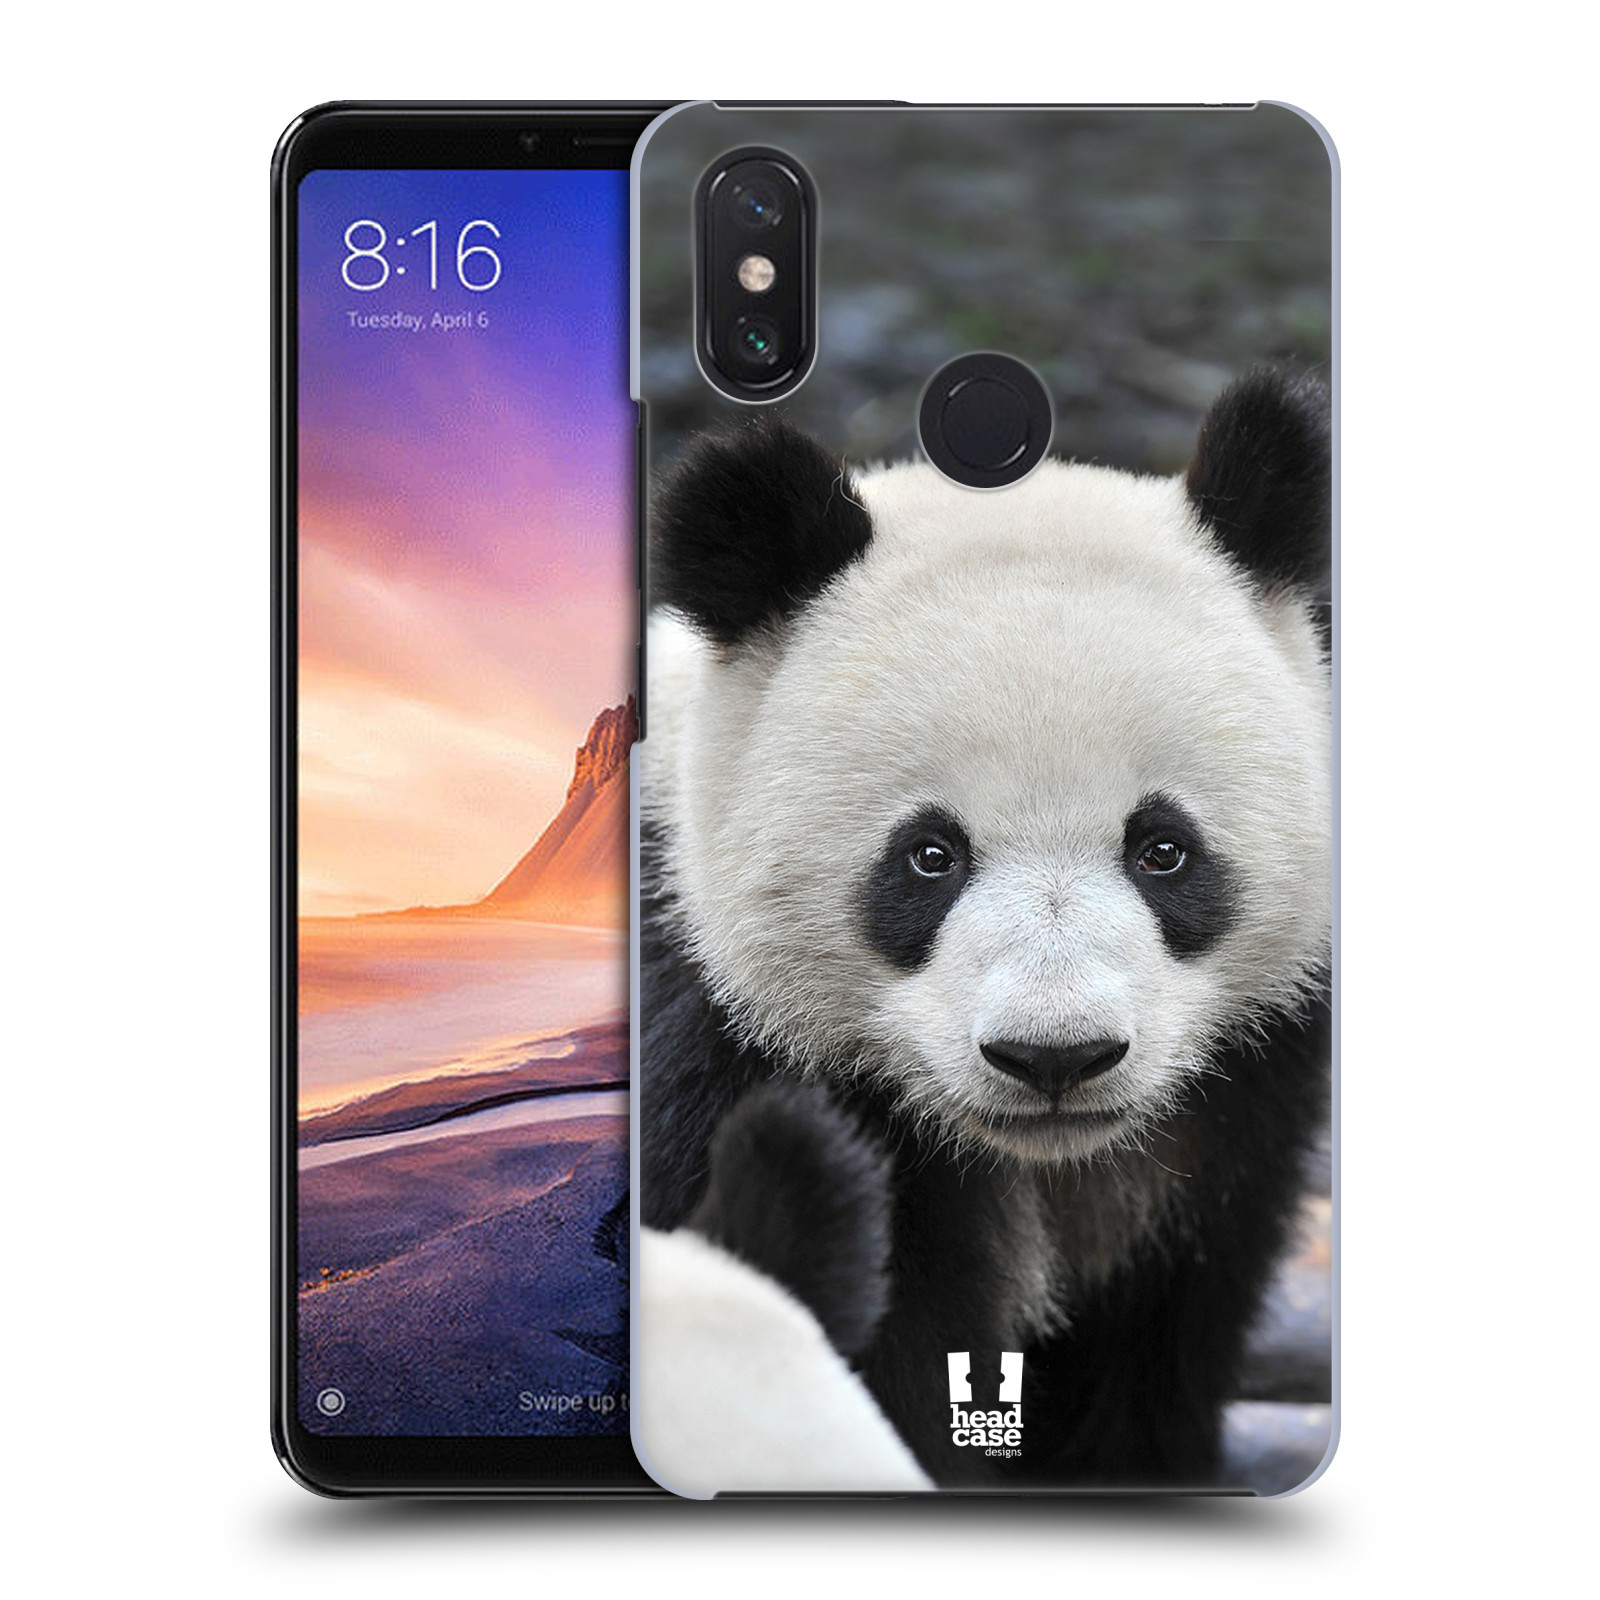 Zadní obal pro mobil Xiaomi Mi Max 3 - HEAD CASE - Svět zvířat medvěd panda